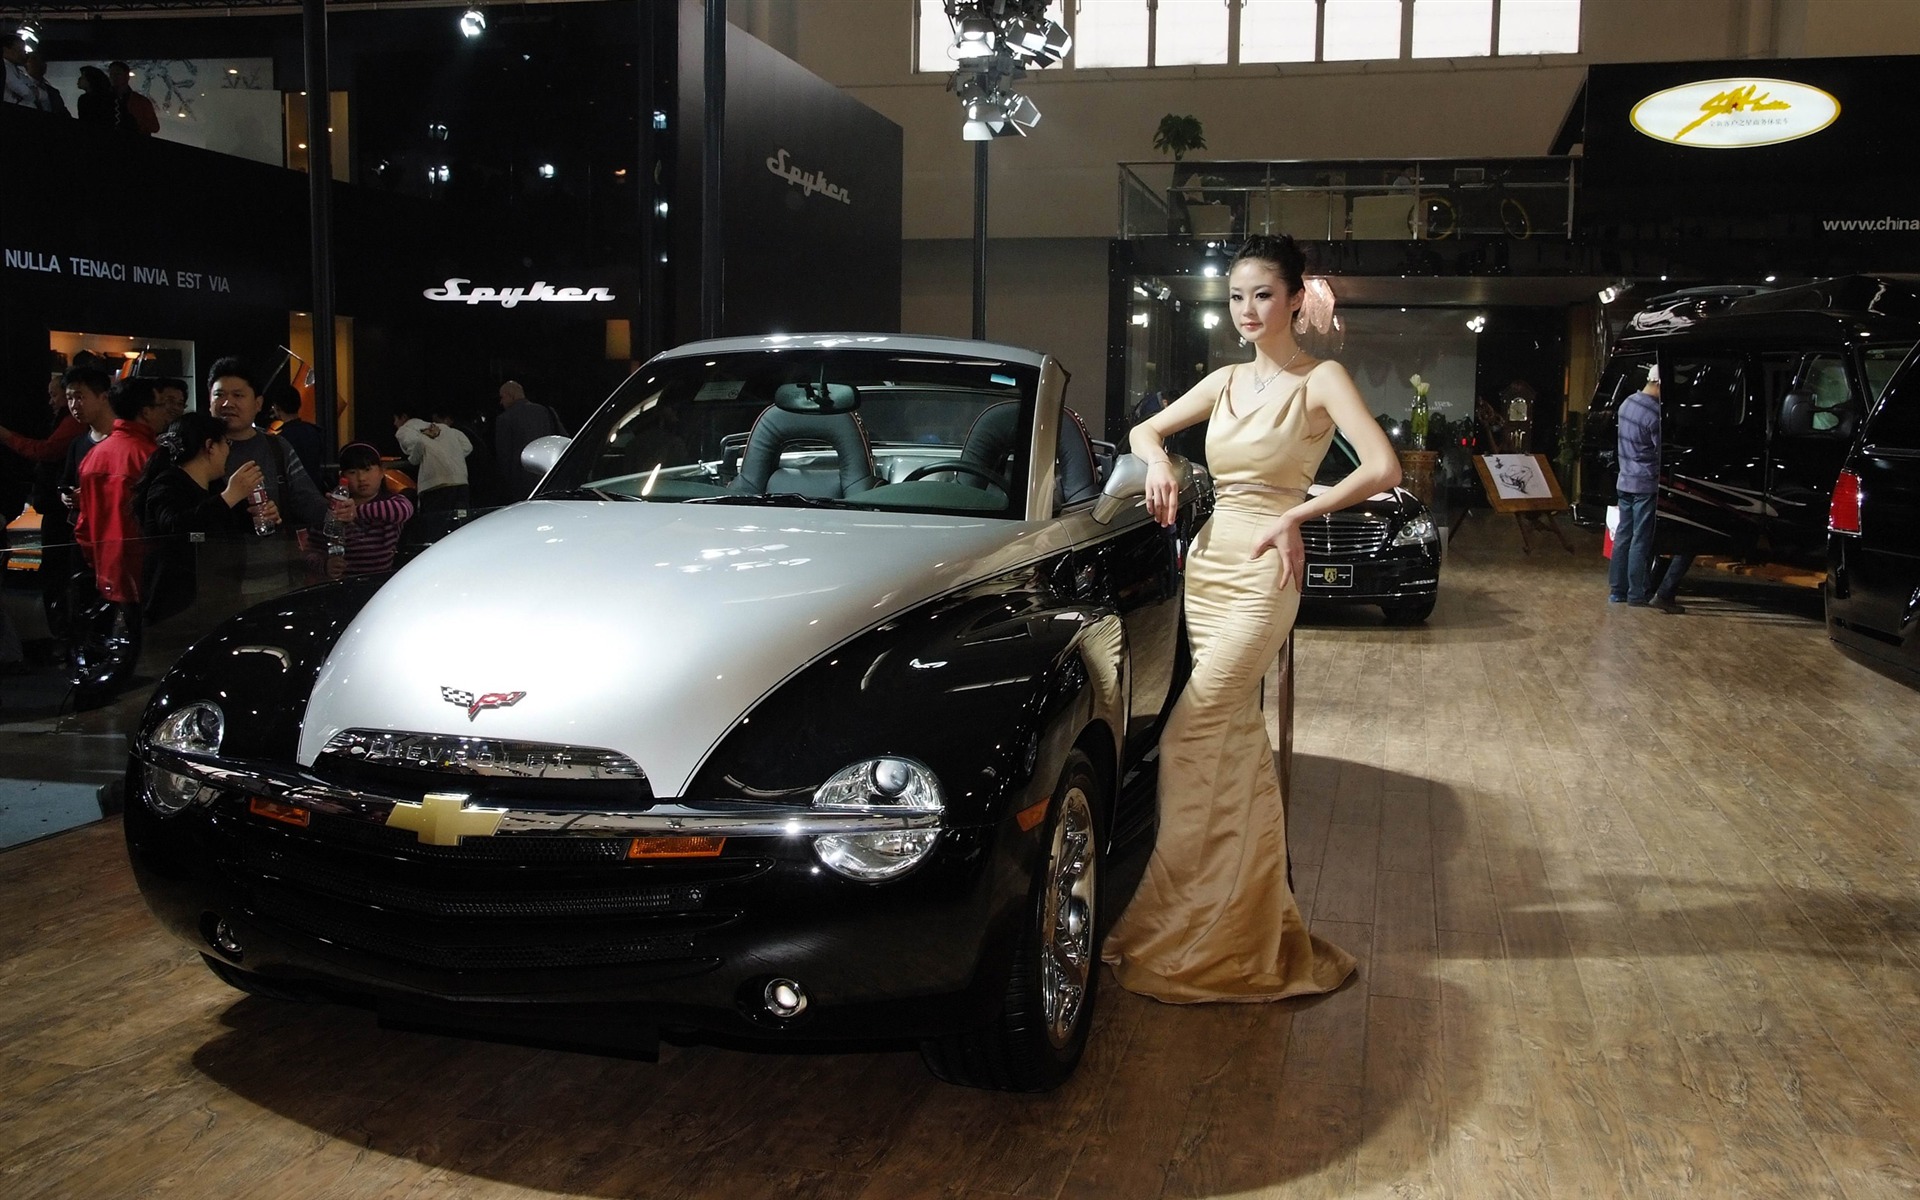 2010北京国际车展 香车美女 (螺纹钢作品)15 - 1920x1200